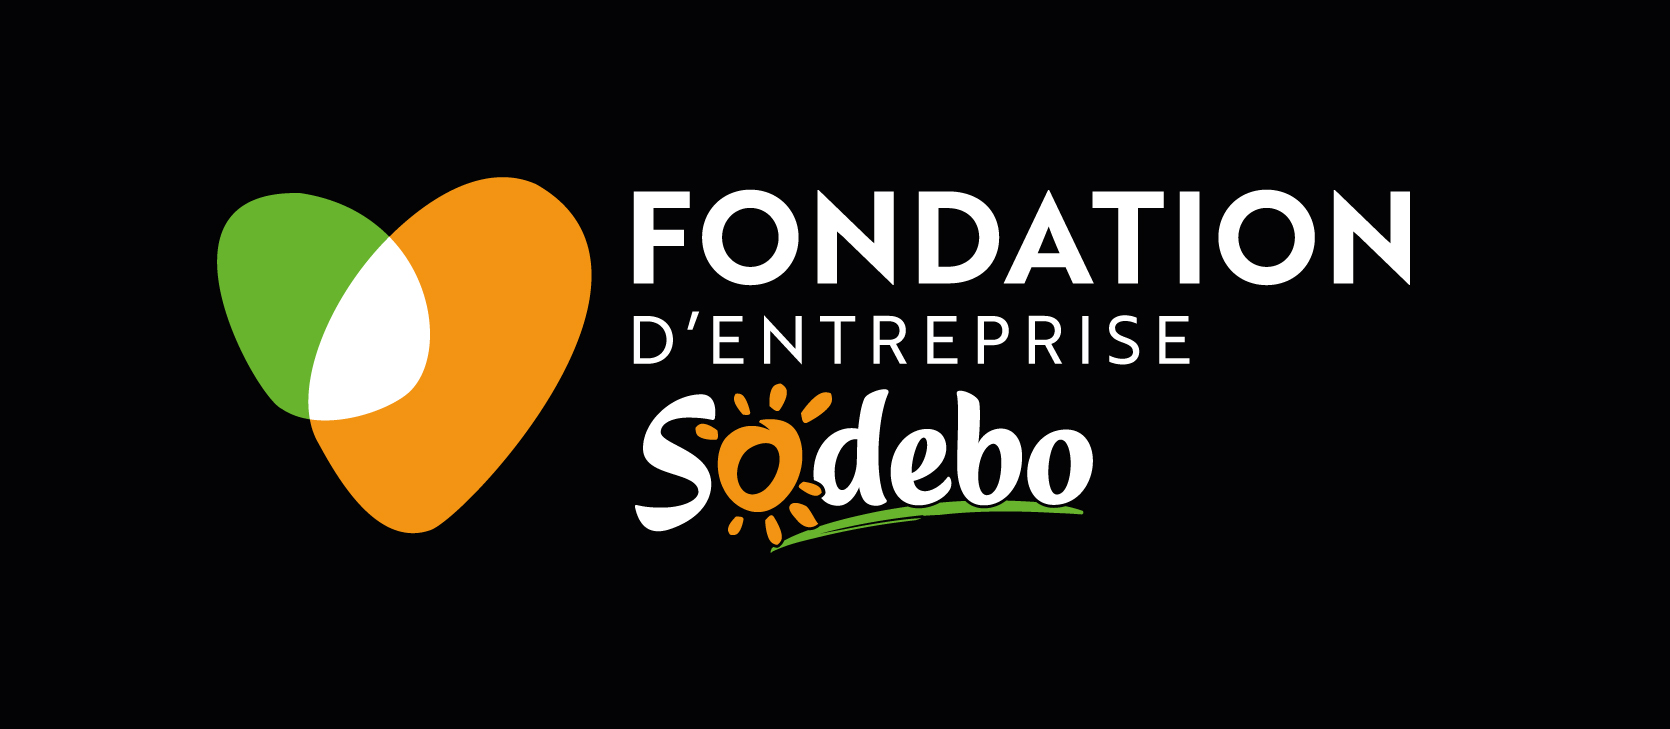 sodebo-fondation-logo